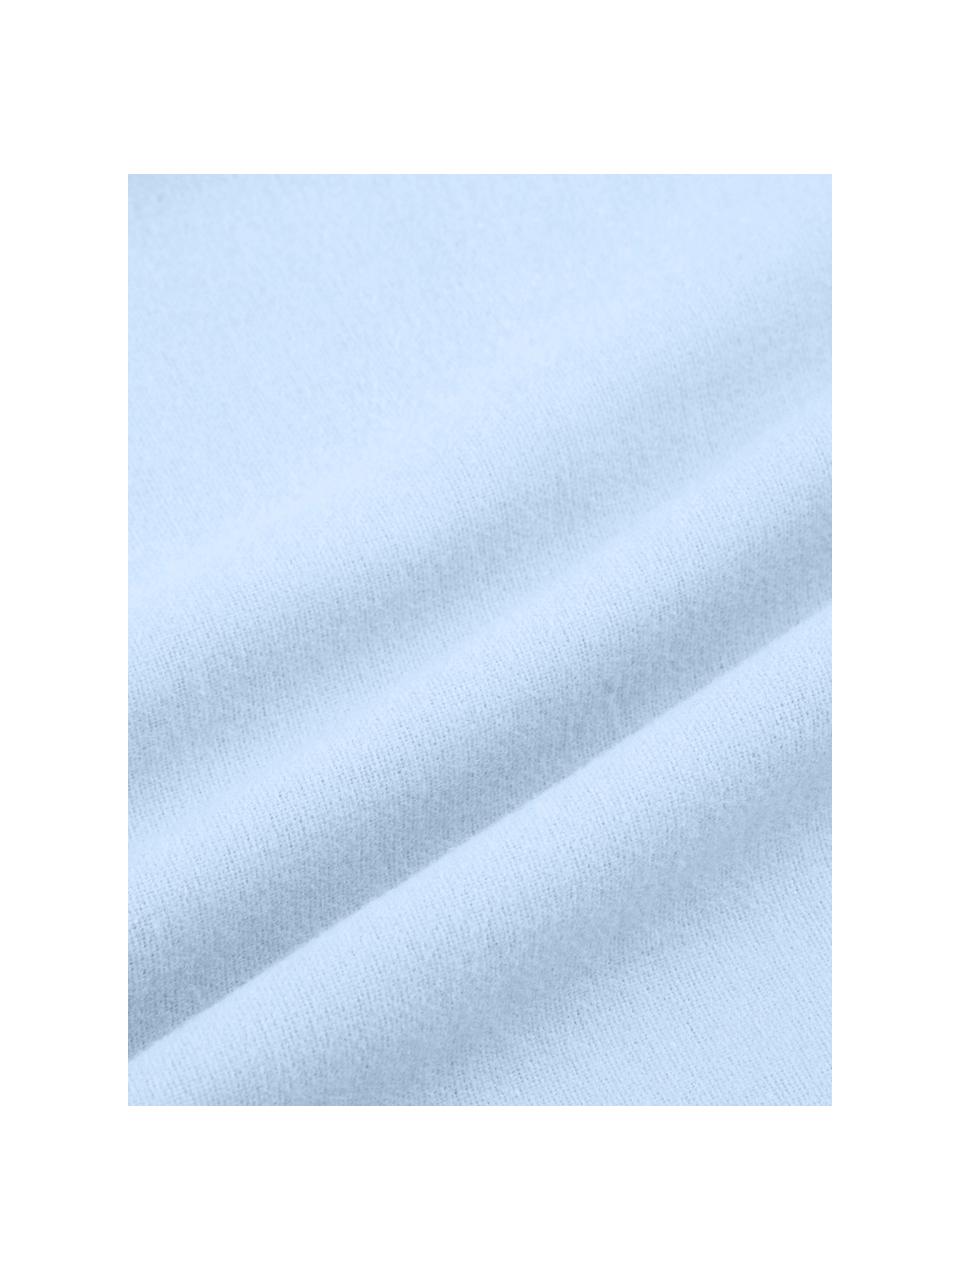 Pościel z flaneli Biba, Jasny niebieski, 240 x 220 cm